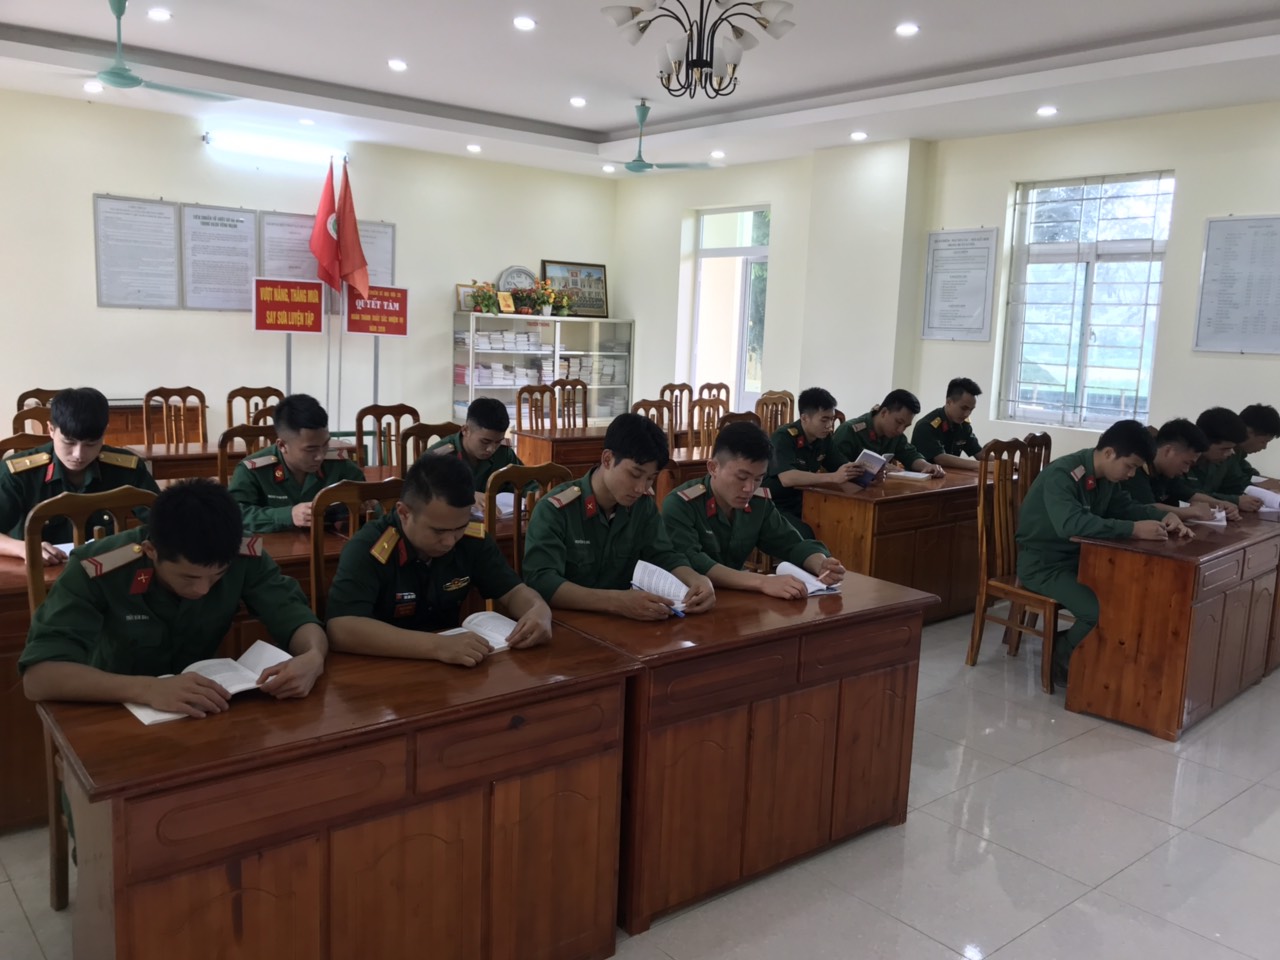 Tuổi trẻ Đoàn Thanh niên Bộ Chỉ huy Quân sự tỉnh Tuyên Quang tổ chức sinh hoạt điểm giới thiệu về sách Bác Hồ